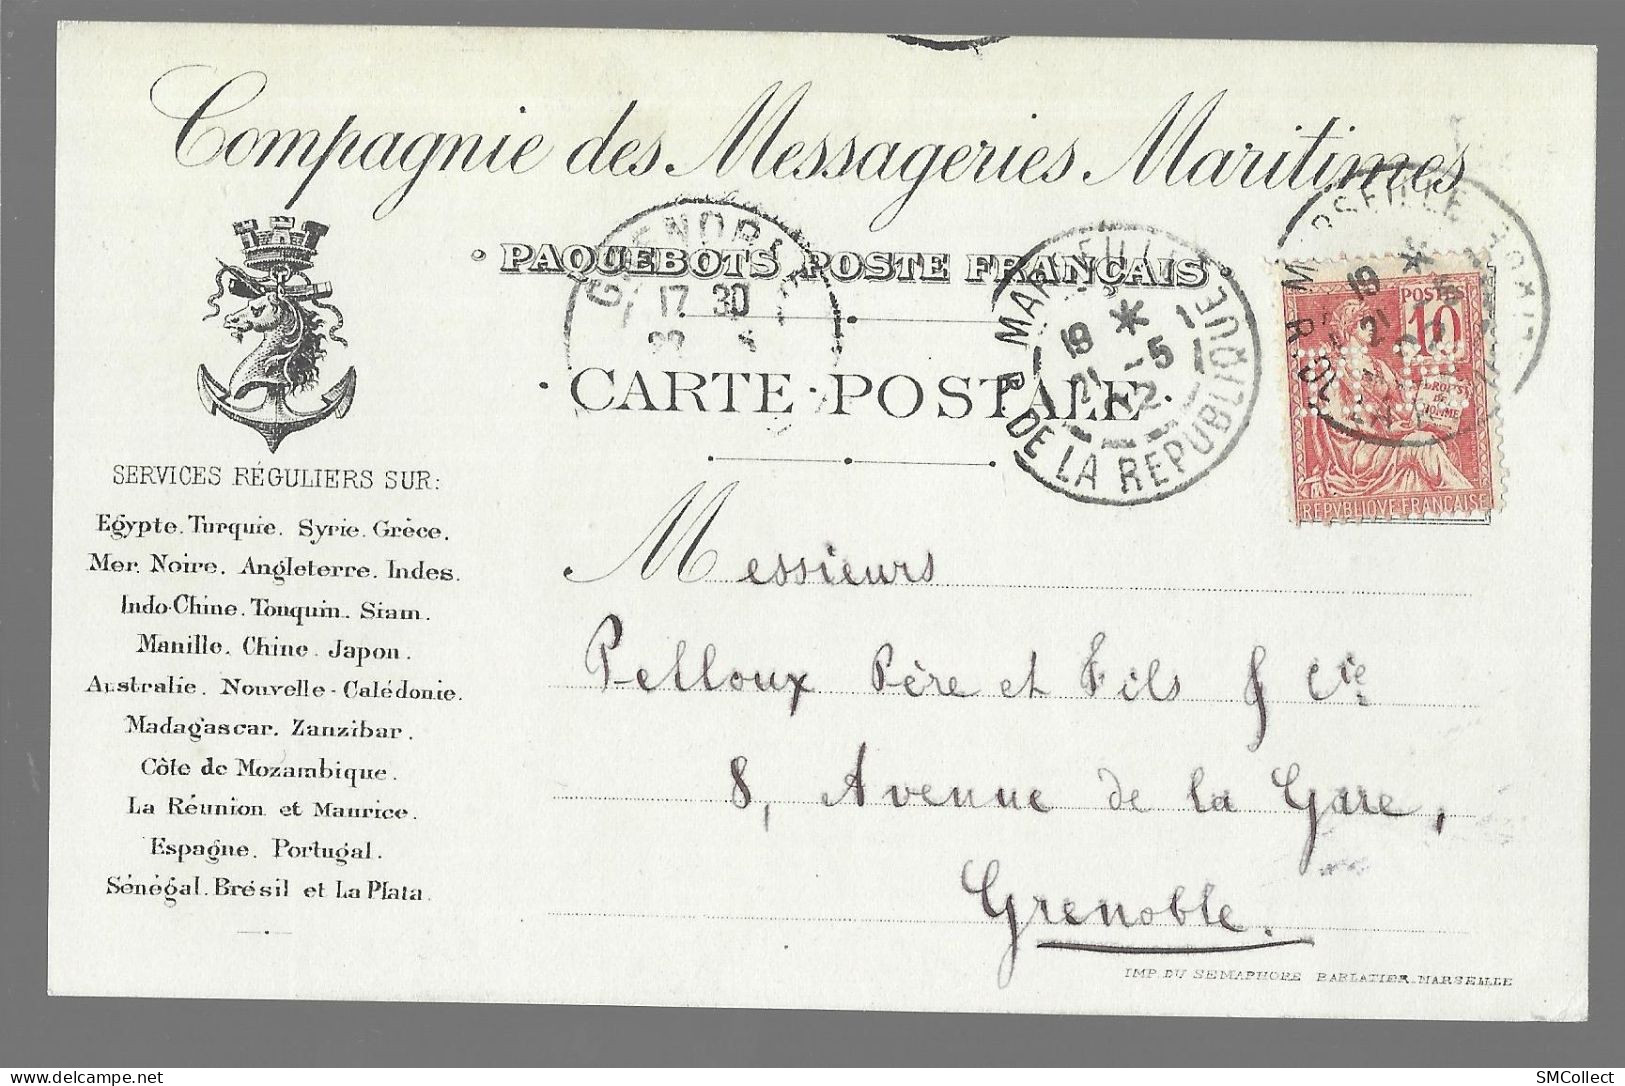 Carte Postale De La Compagnie Des Messageries Maritime, Paquebots Poste Français (13649) - Passagiersschepen